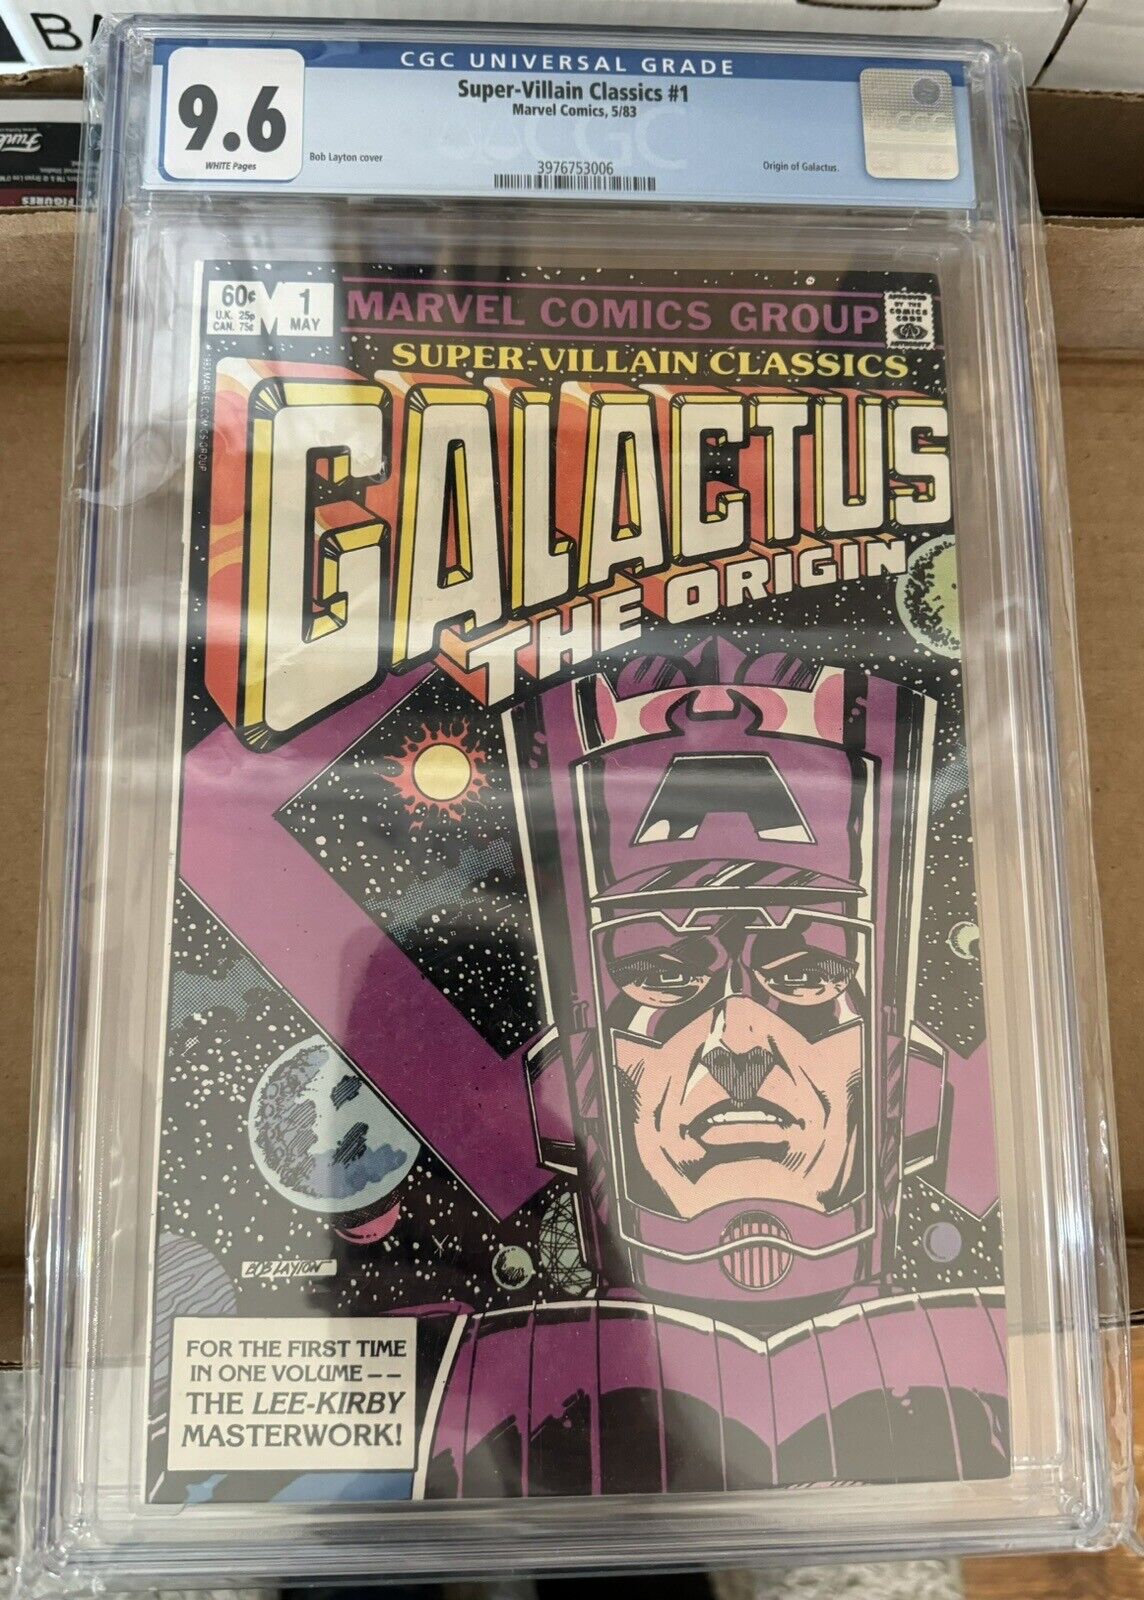 Super-Villain Classics Galactus the Origin Canadian Price #1 CGC 9.6 1983